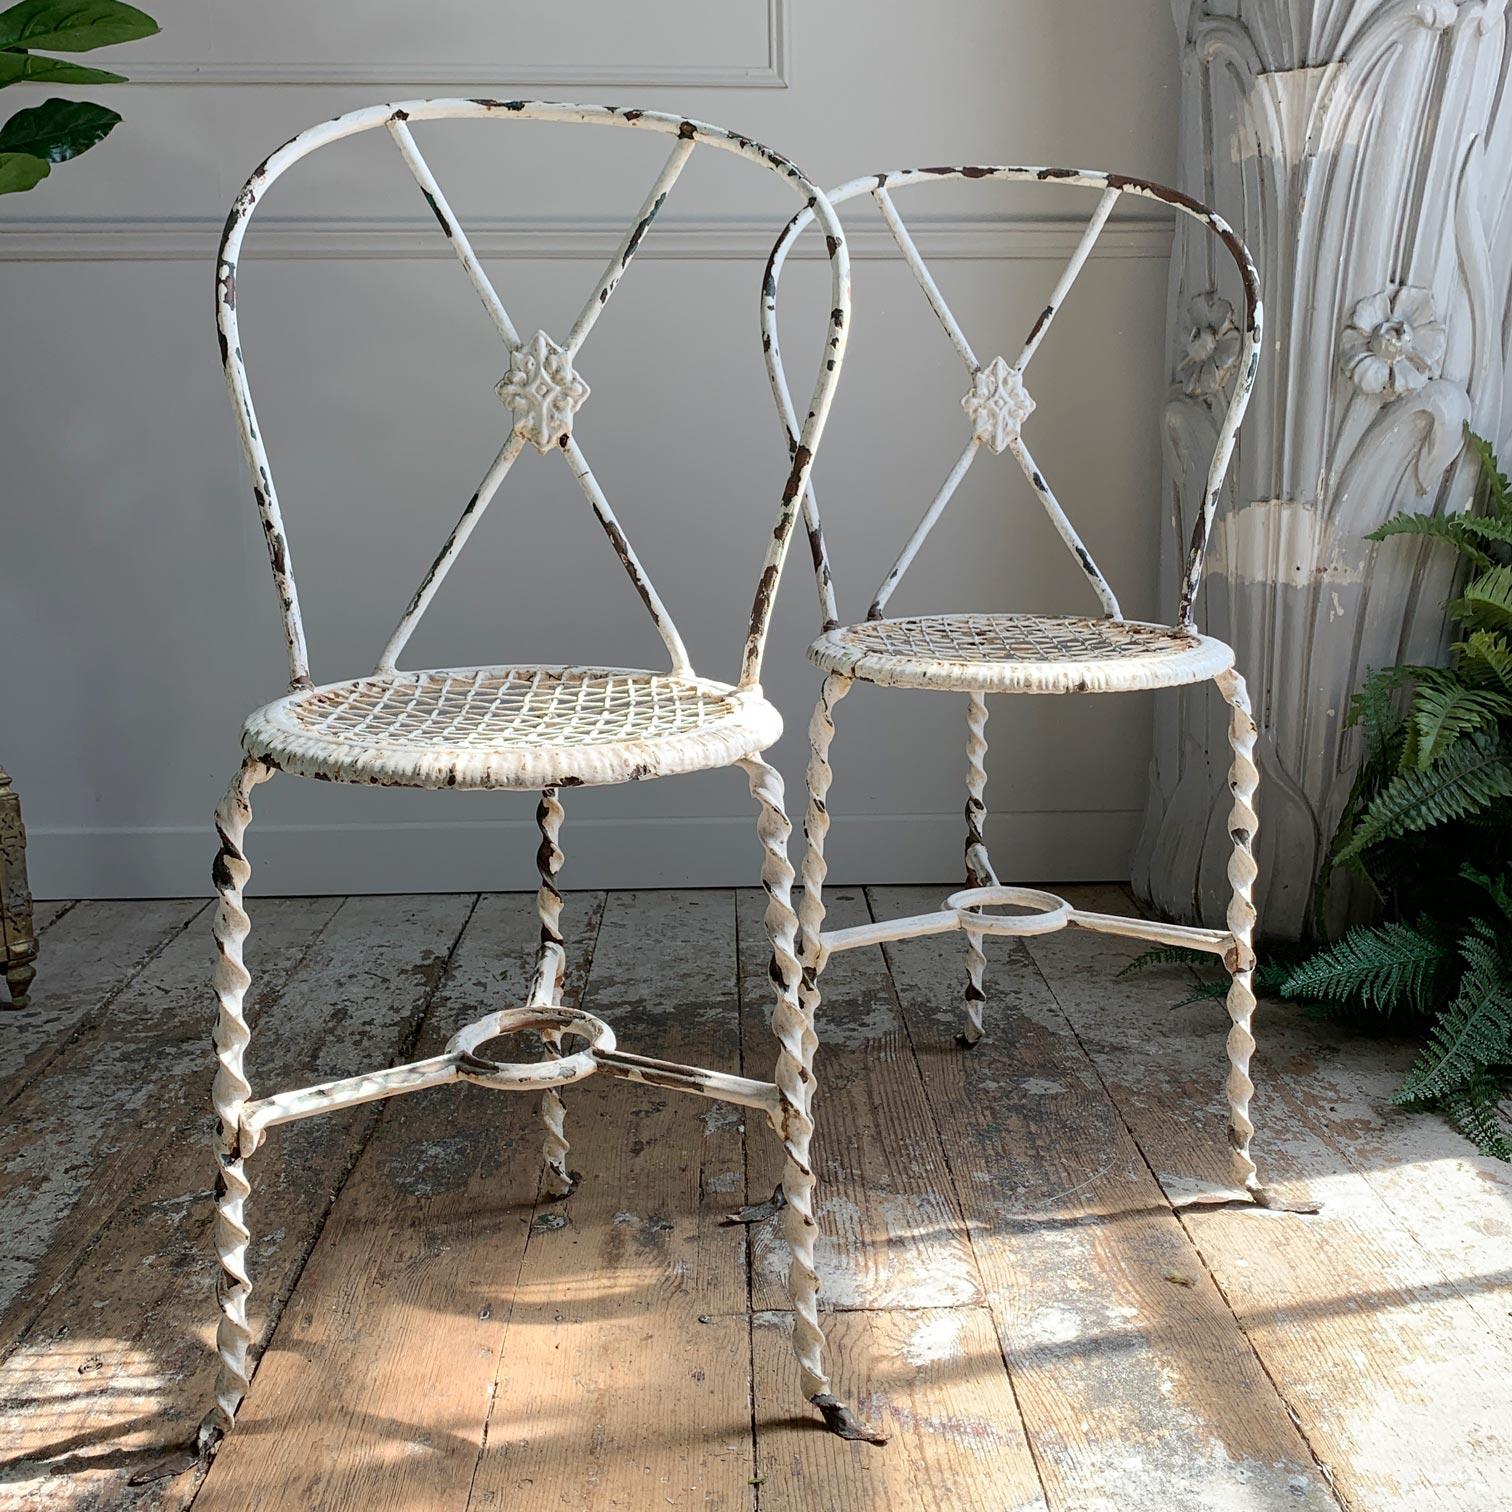 Ein exquisites Paar Regency-Stühle aus dem frühen 19. Jahrhundert, gedrehte Schmiedeeisen-Konstruktion, mit Drahtgestell-Sitzen. Jeder Stuhl ist dreibeinig und hat Spatzenfüße. Ein sehr seltenes Paar schöner Stühle aus der Regency-Ära, perfekt für